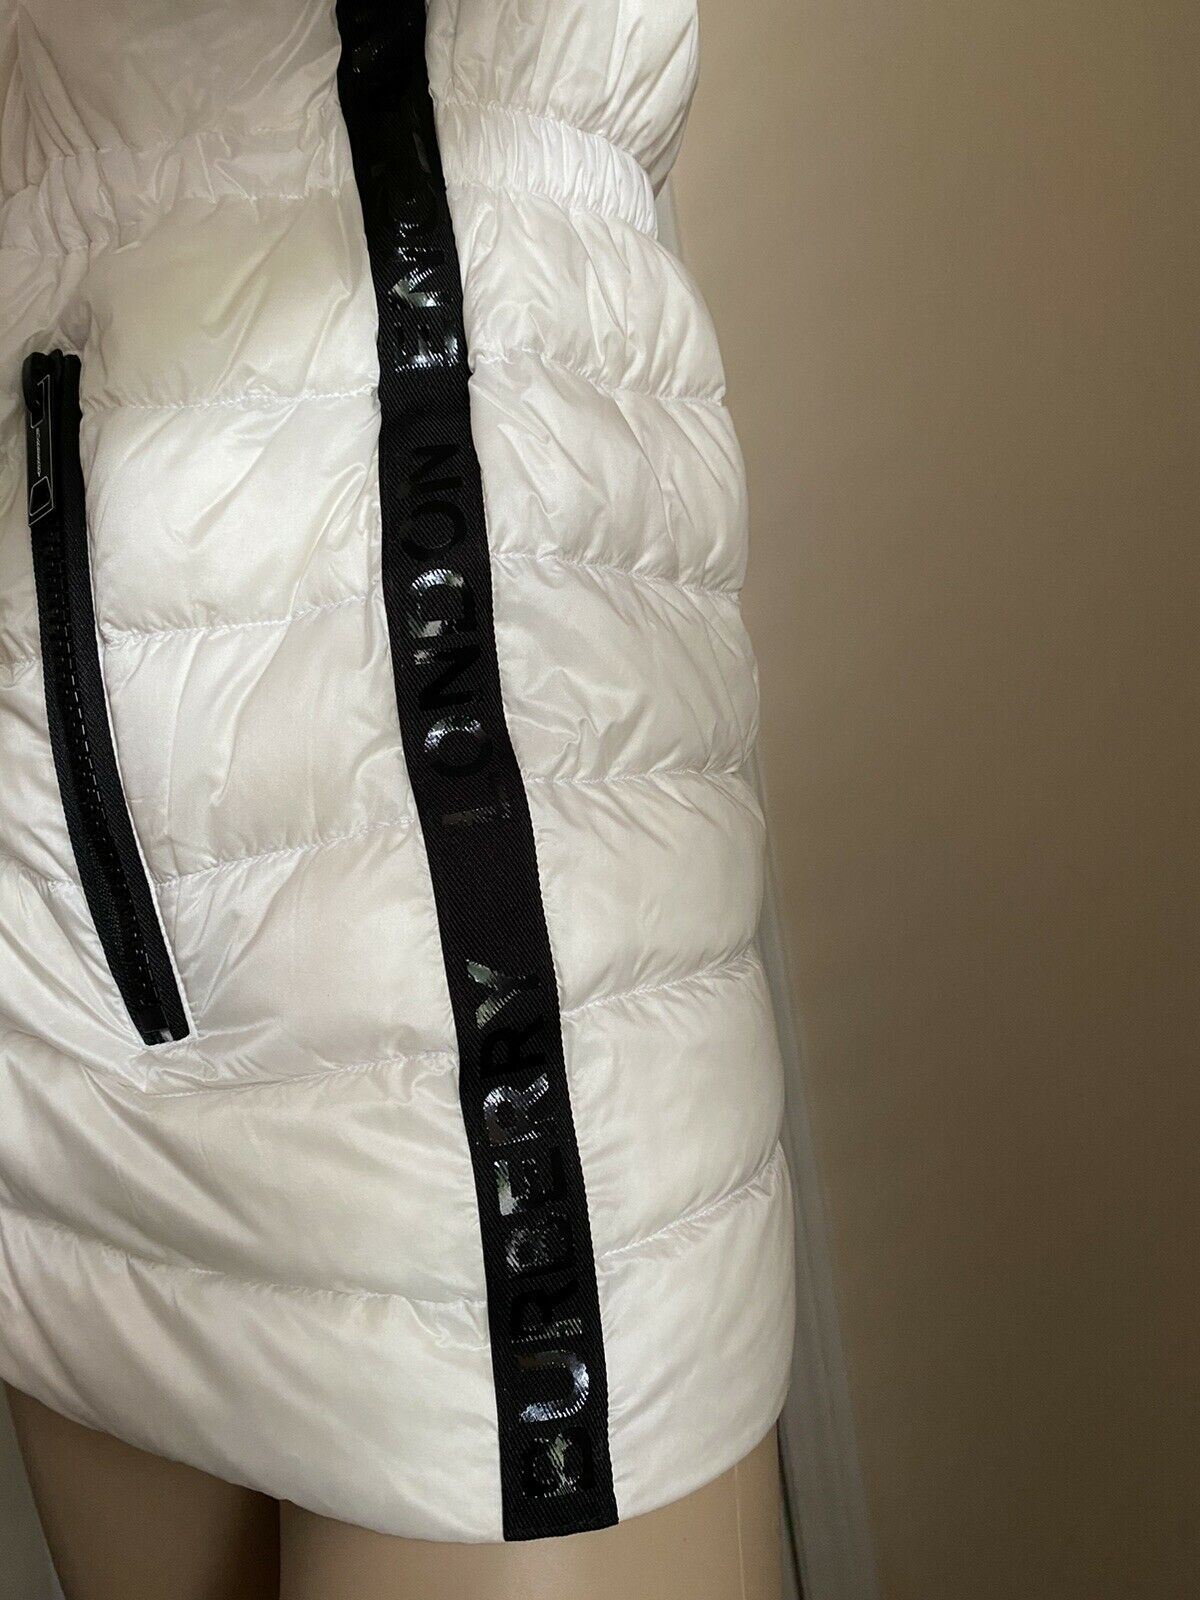 Новая женская легкая куртка-пуховик Burberry за 1090 долларов, белая, размер M